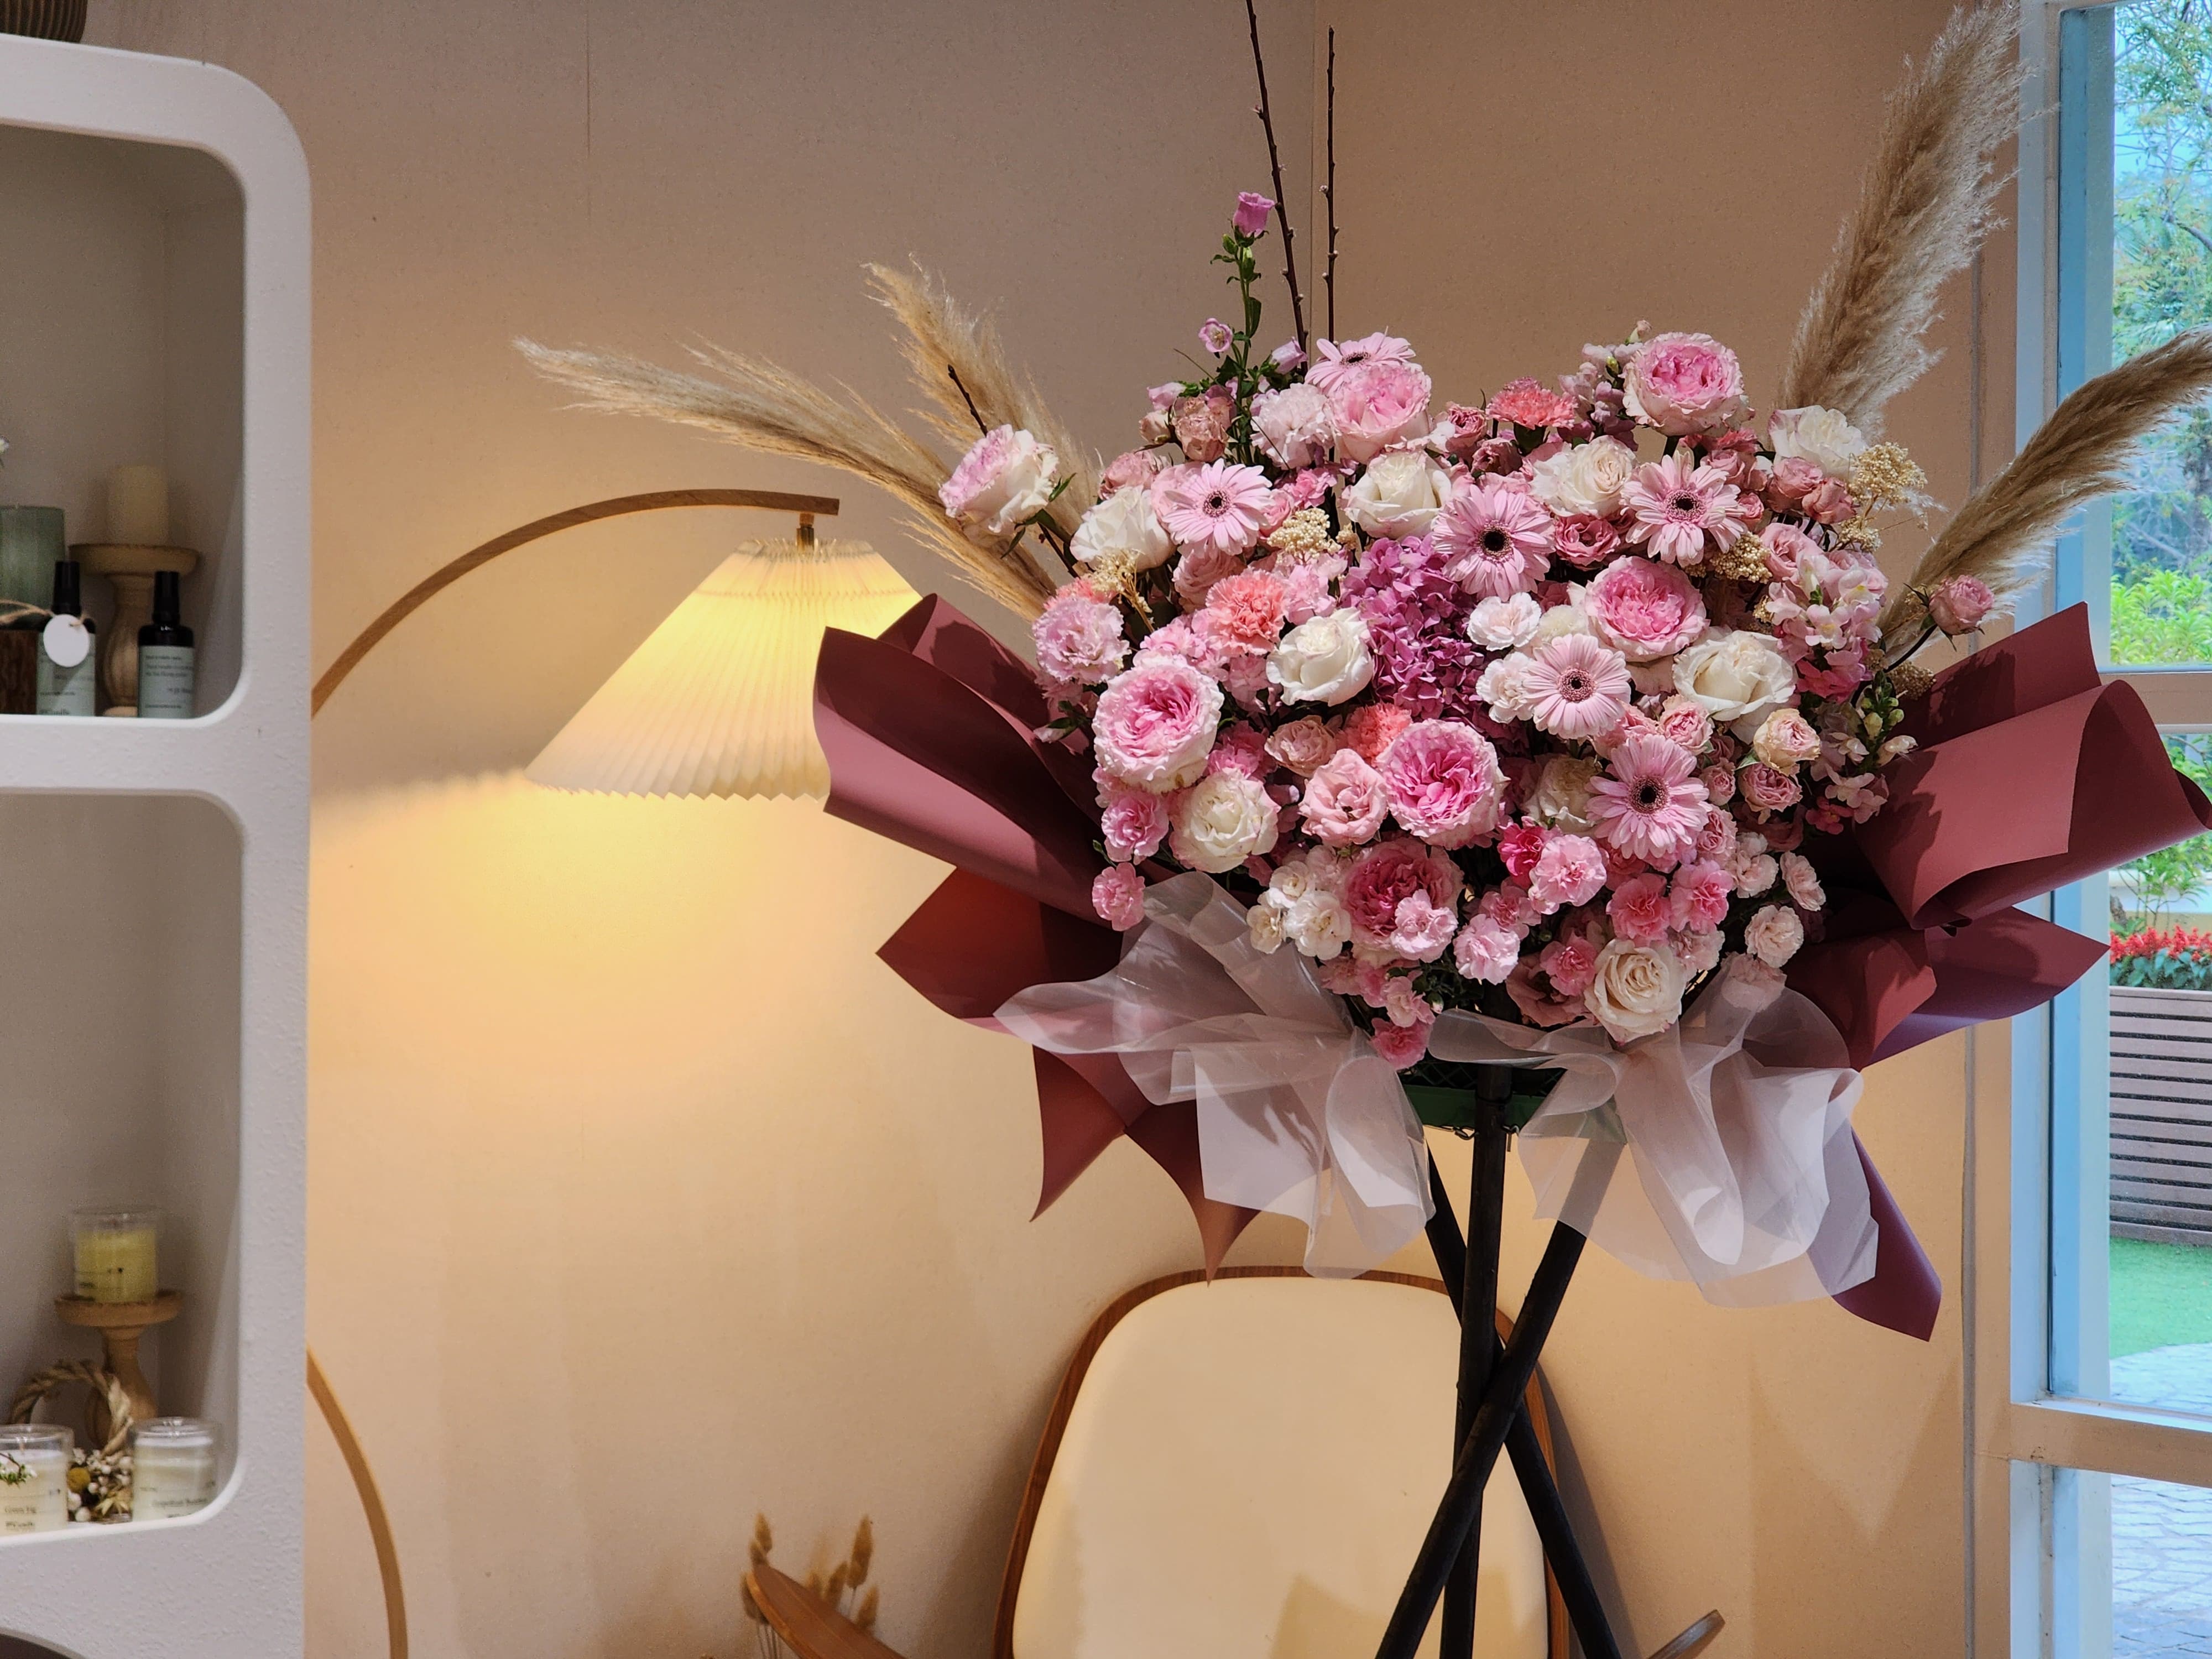 網上花店 花束 香港花店 開張花籃 特色花束 Lavish Florist 情人節 即日送花 Bouquet Hong Kong Flower Shop online flower shop 